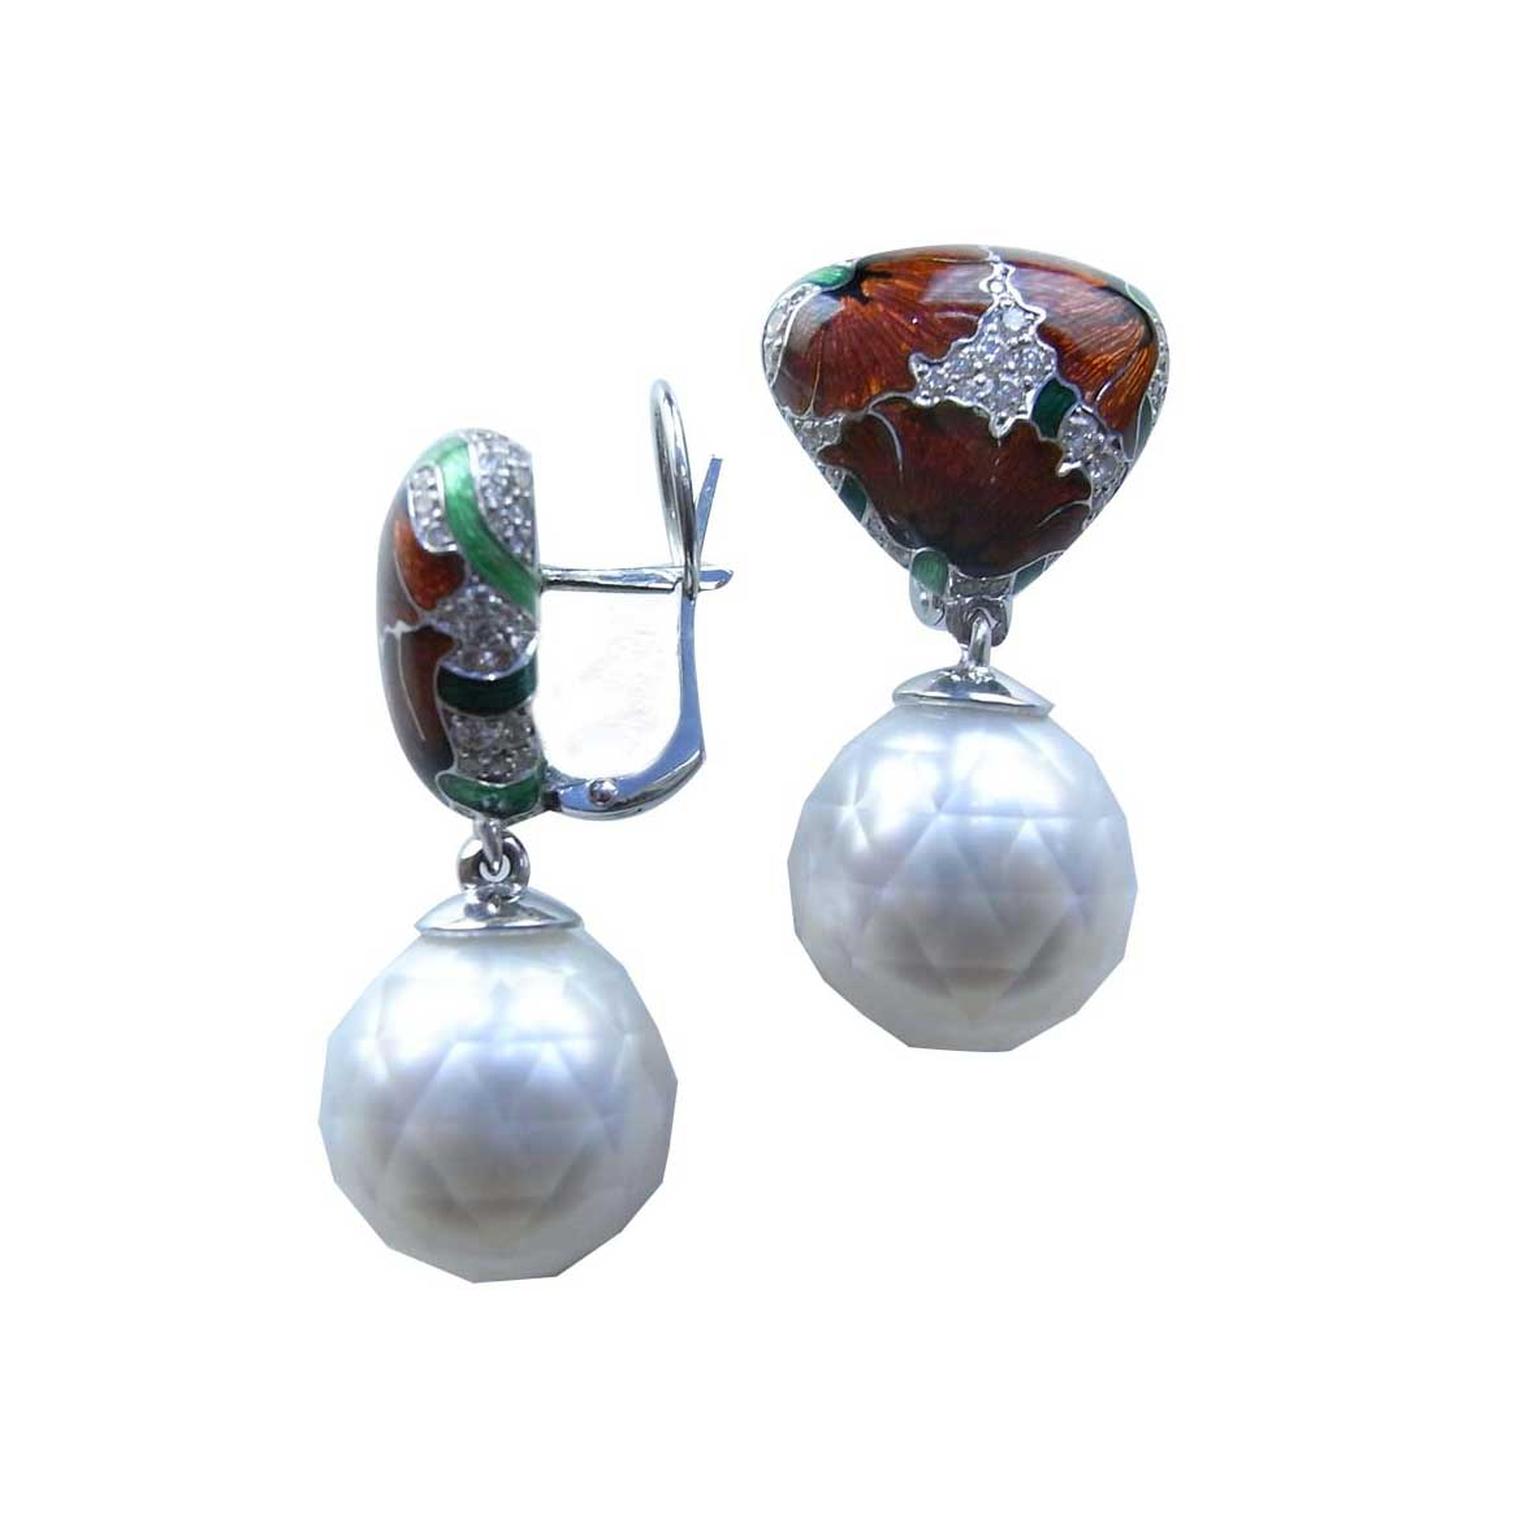 Poppy earrings by Ilgiz F for Annoushka